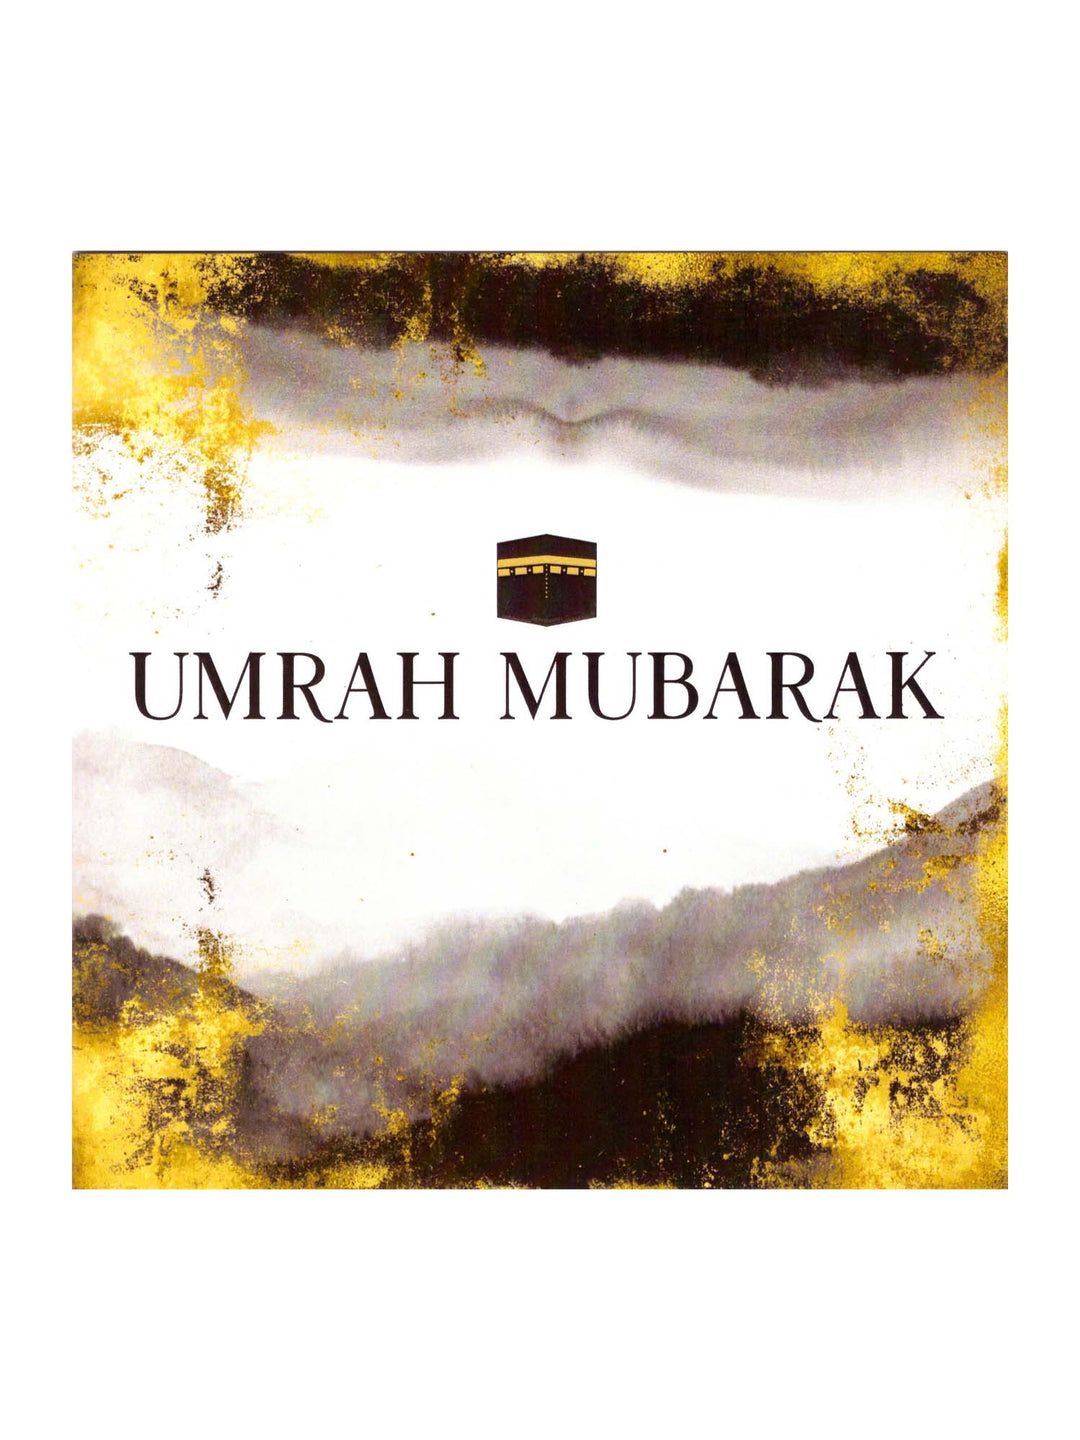 بطاقة تهنئة – عمرة مبارك (ألوان مائية/ذهبي)